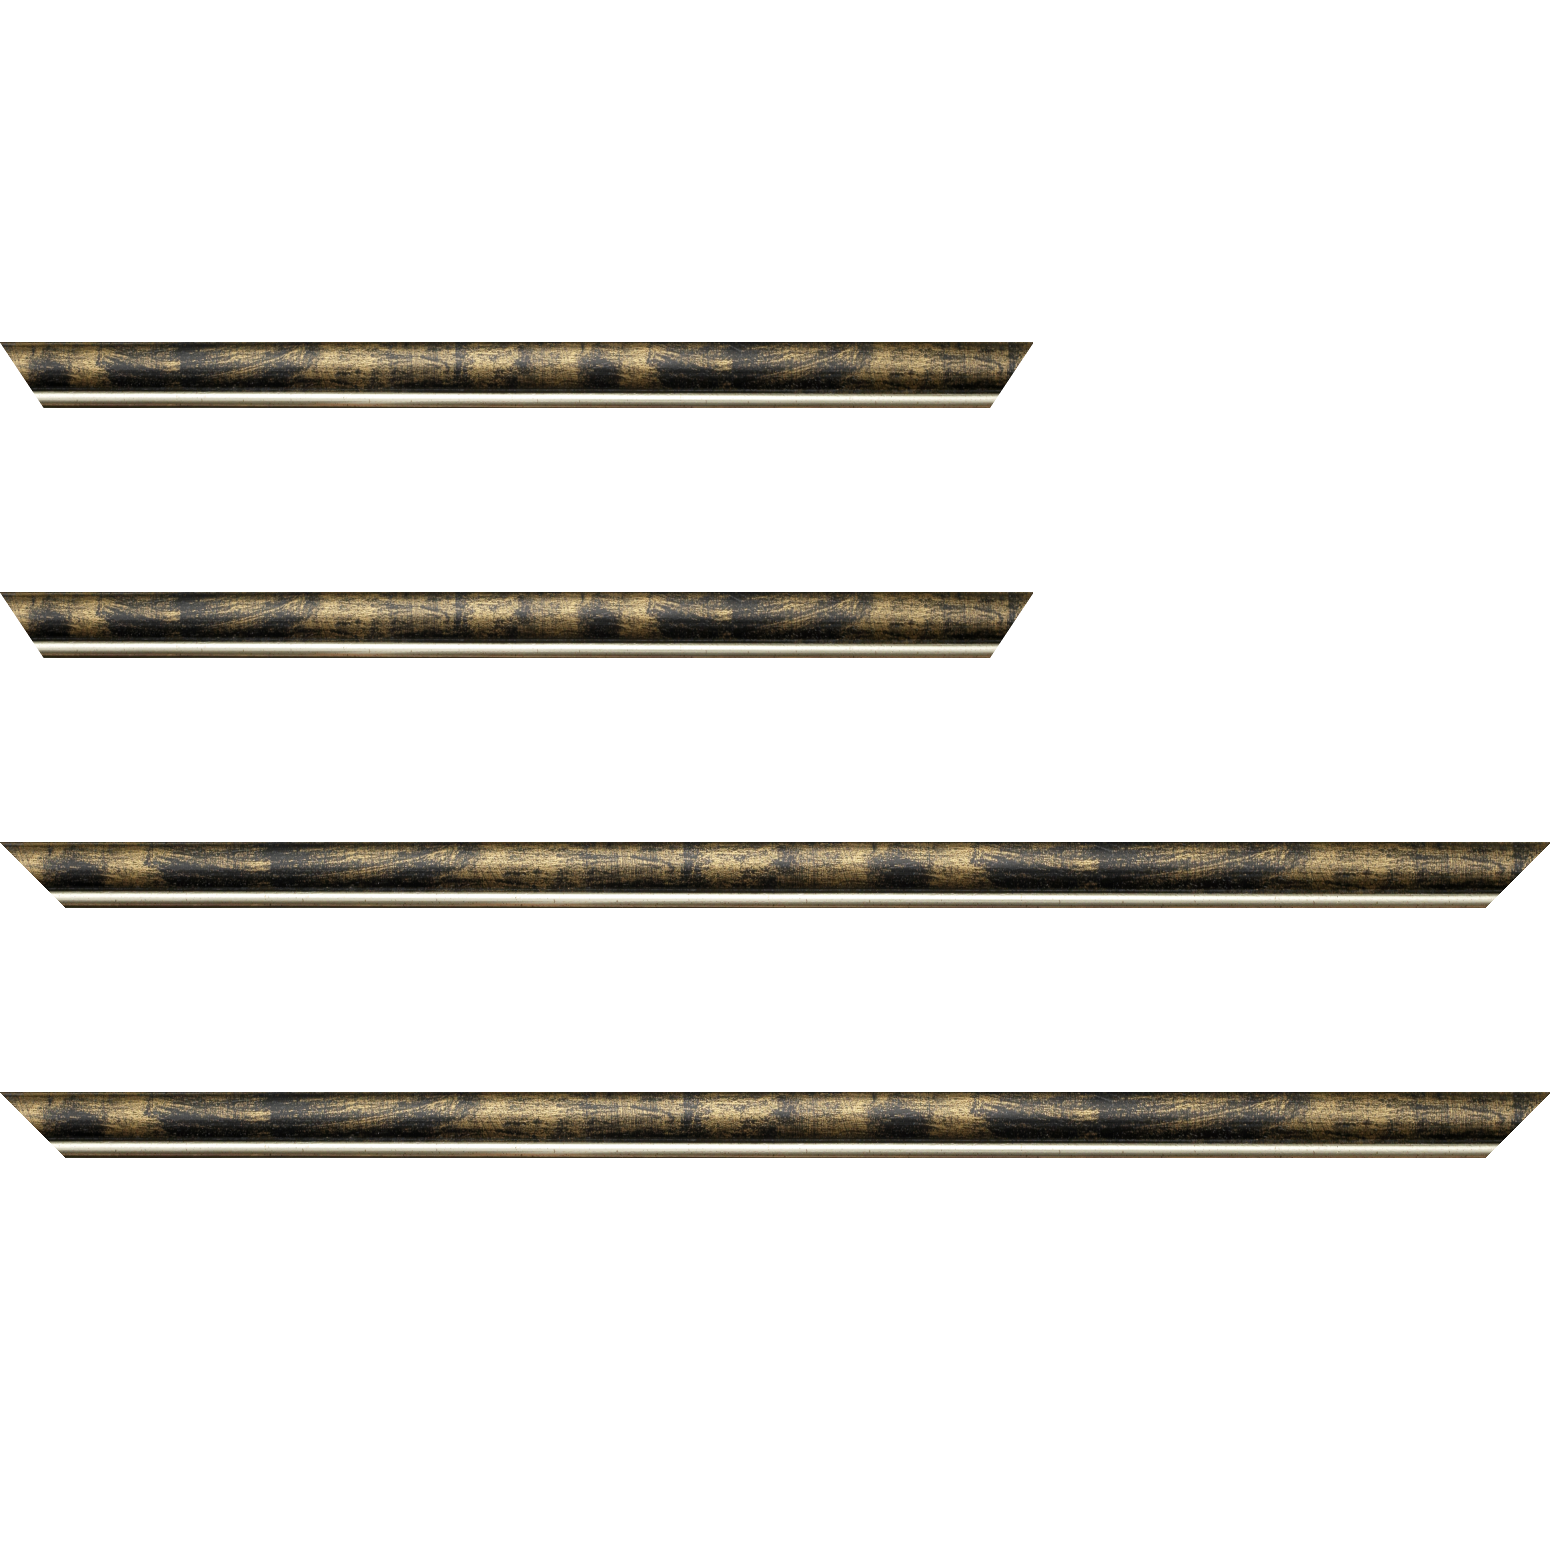 Baguette bois profil arrondi largeur 2.1cm  couleur noir fond or filet argent chaud - 25x25